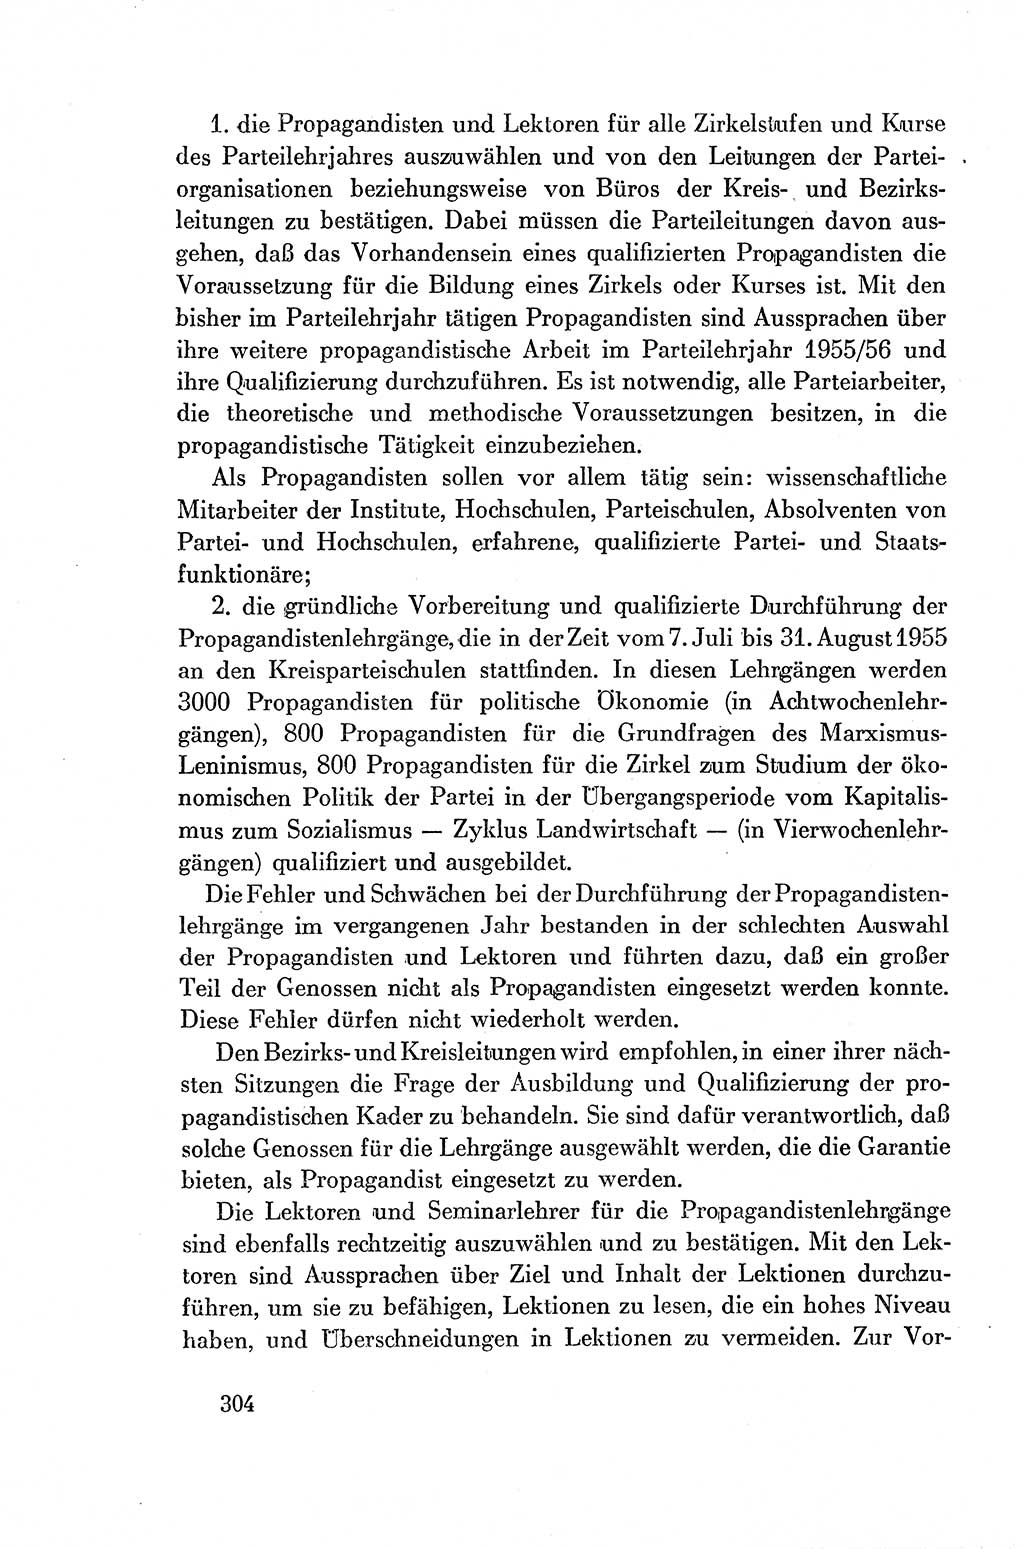 Dokumente der Sozialistischen Einheitspartei Deutschlands (SED) [Deutsche Demokratische Republik (DDR)] 1954-1955, Seite 304 (Dok. SED DDR 1954-1955, S. 304)